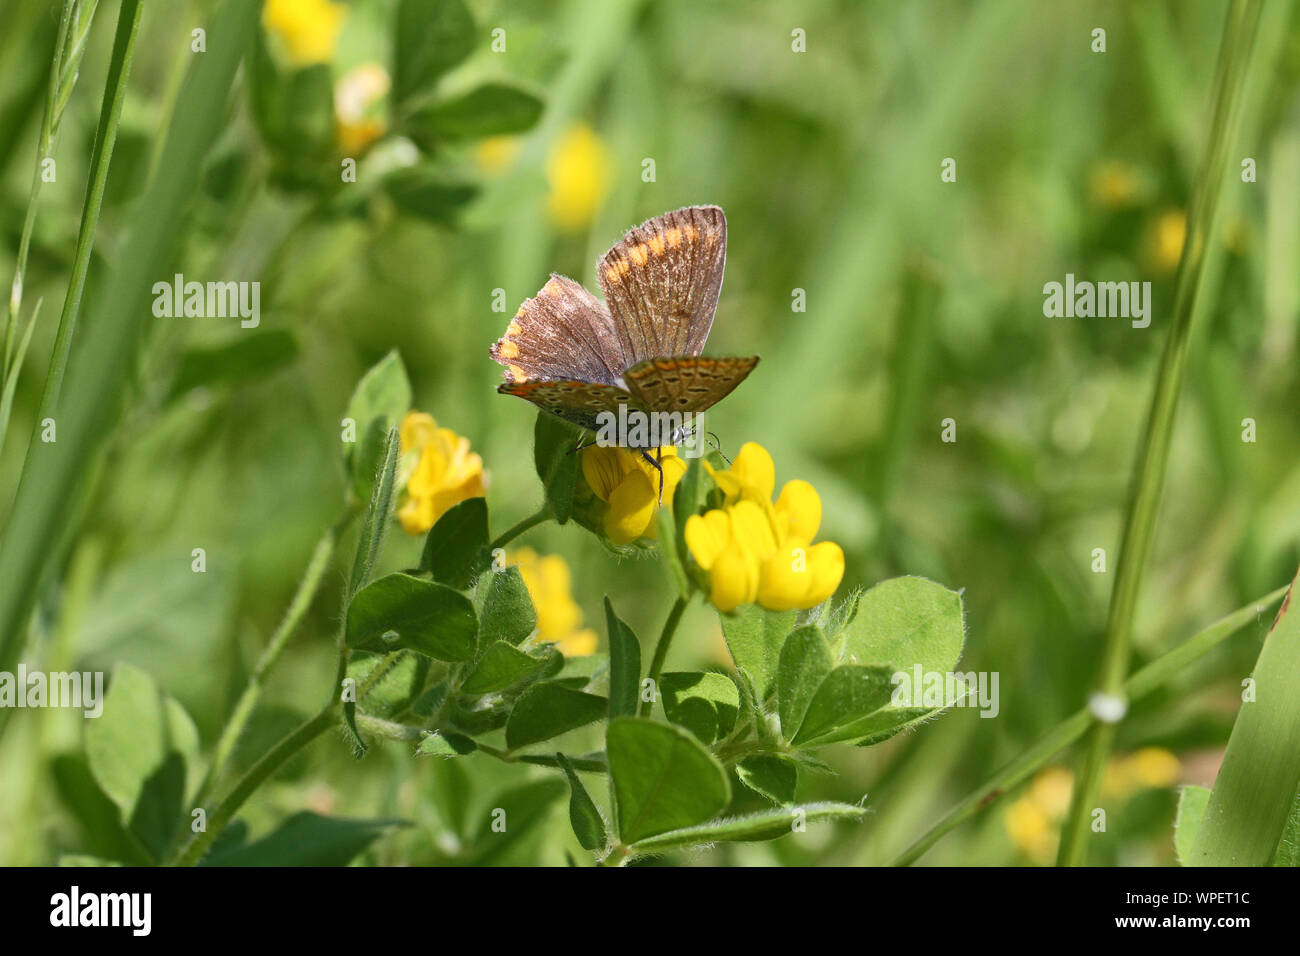 Weibliche gemeinsame blauer Schmetterling mit Ramponierten Flügeln Latin Euplagia quadripunctaria boalensis auf gelbe Kleeblatt oder medick Blume oder Medicago sativa Blüte Stockfoto